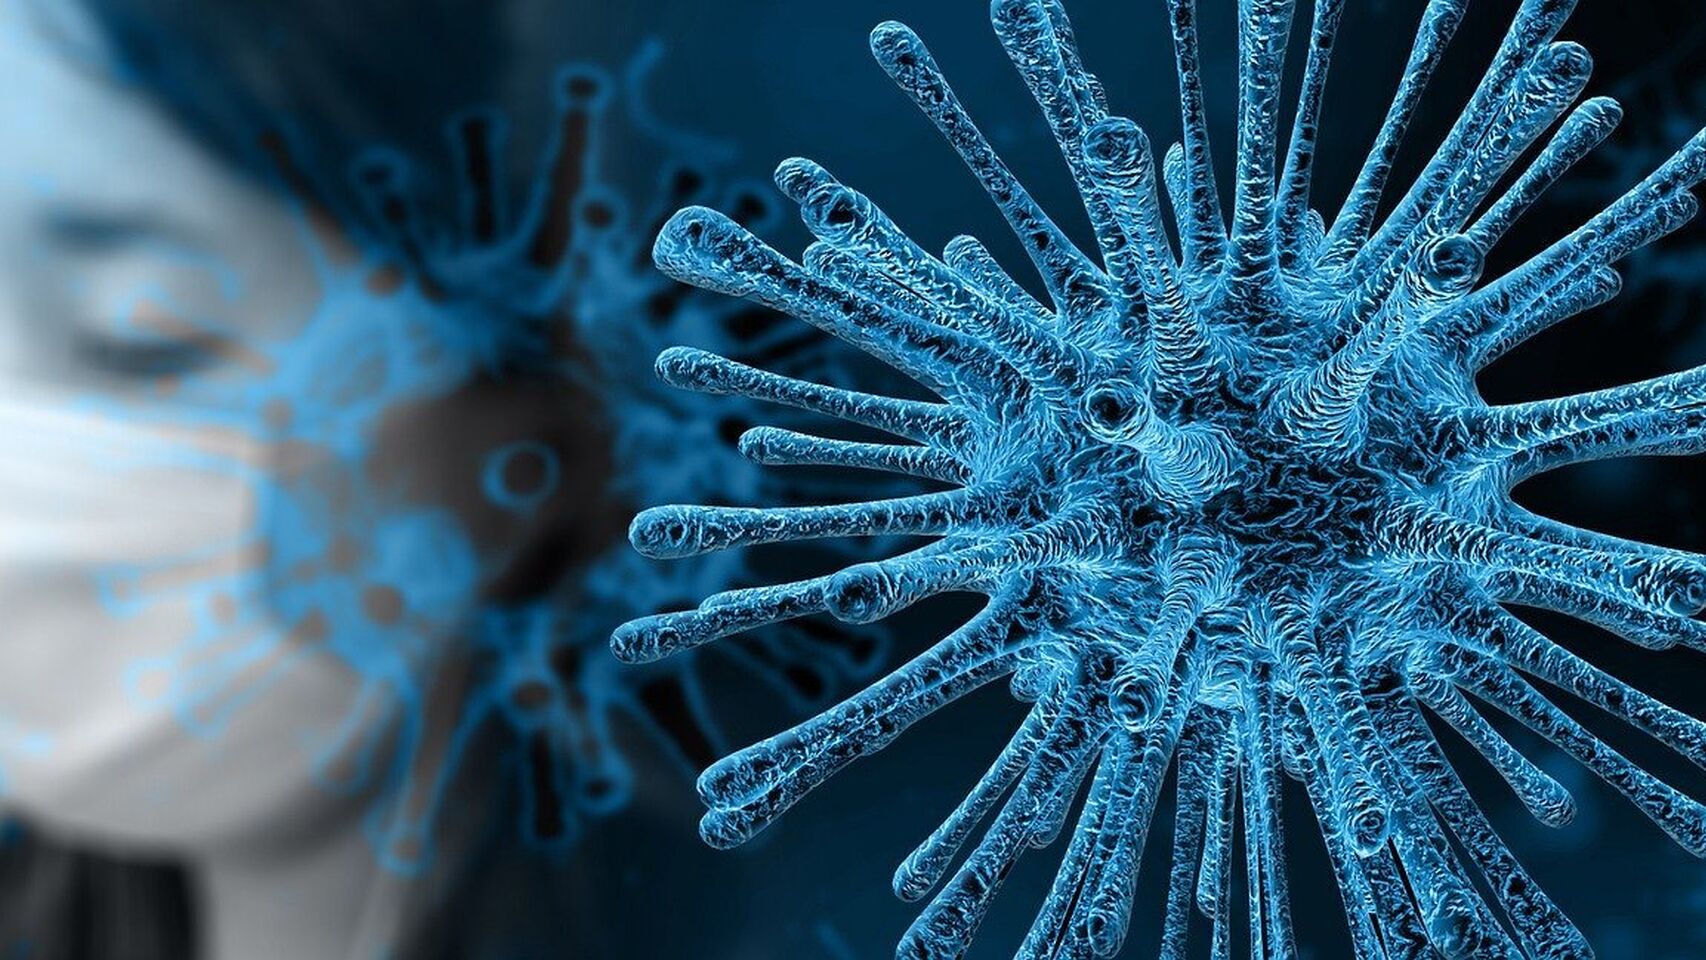 Aguas residuales de un inodoro dispersaron un brote de coronavirus en china, revela estudio